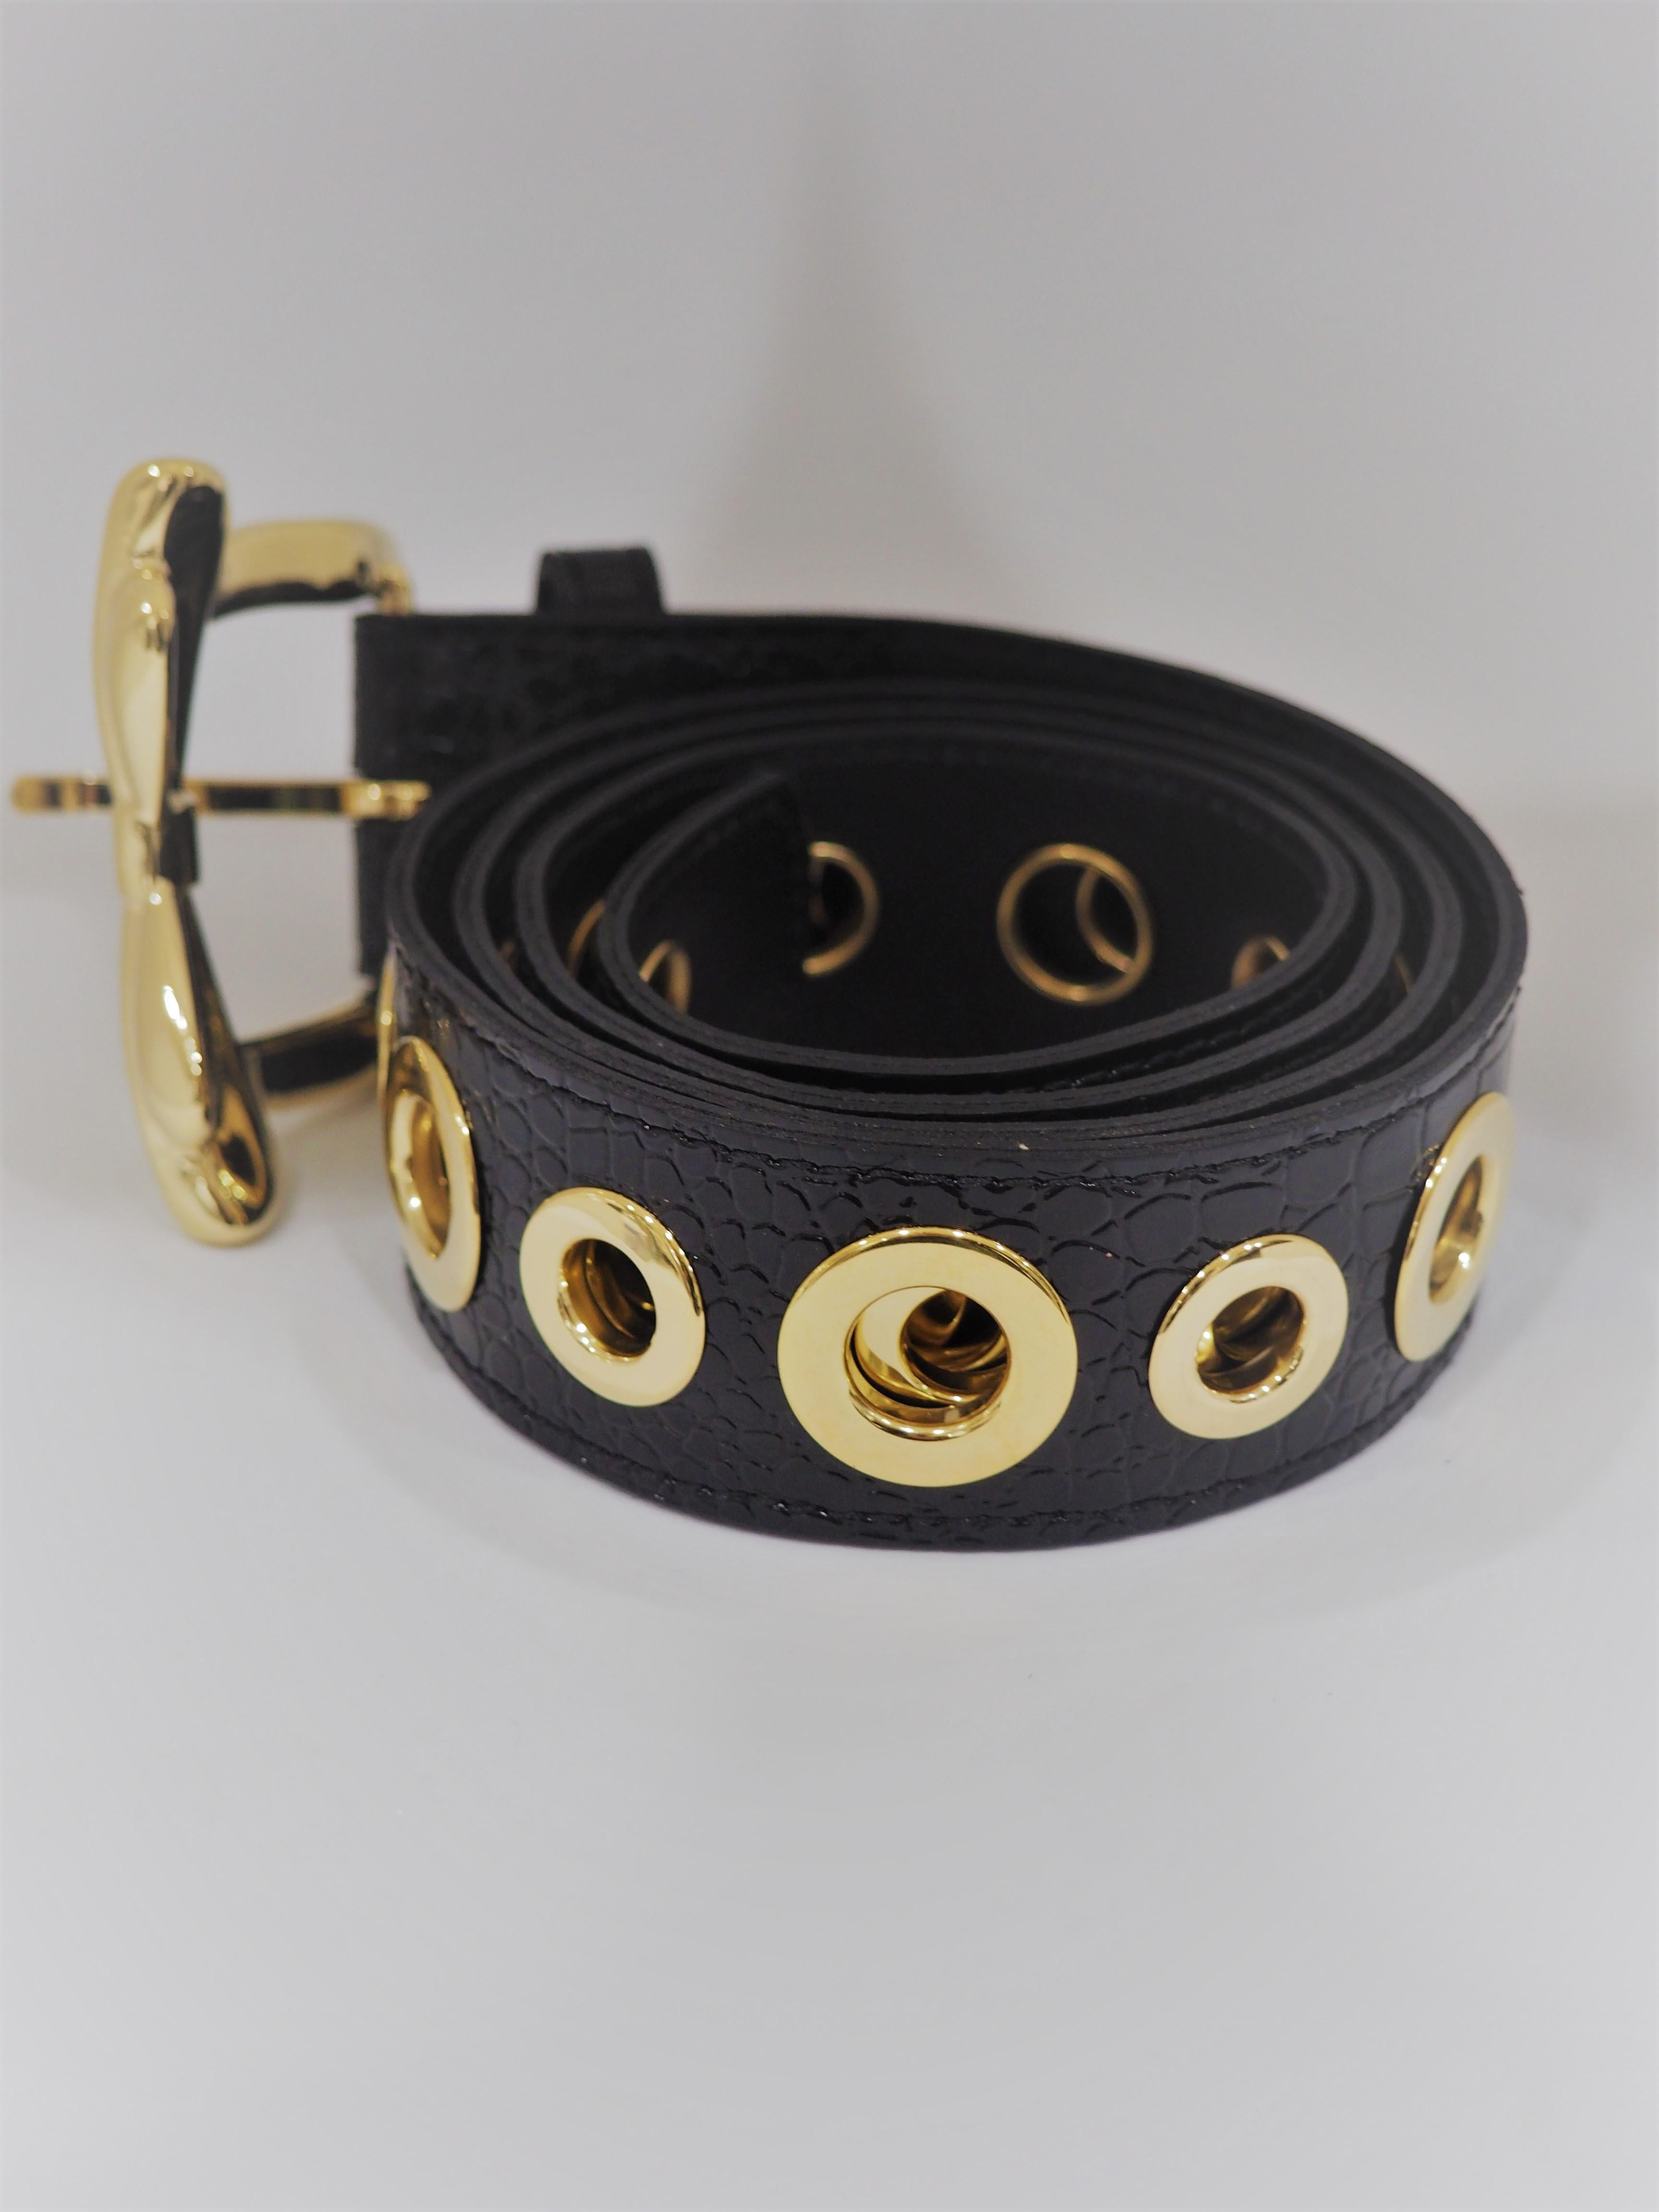 Black leather gold hardware belt NWOT 2